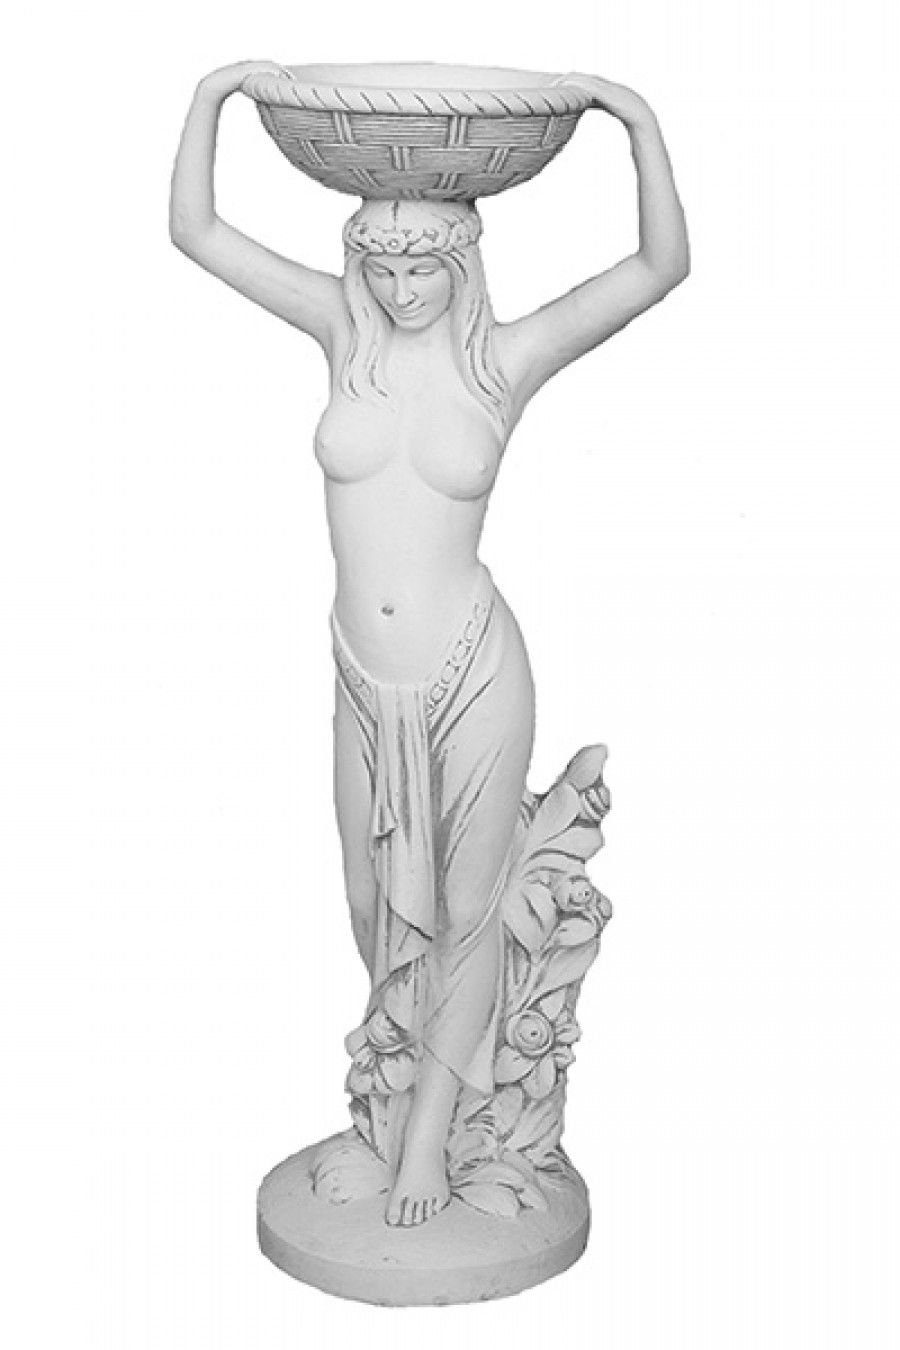 Antikes Wohndesign Gartenfigur Frauenskulpture Wasserfontäne Stein Skulptur Pflanzenschalen Blumensch